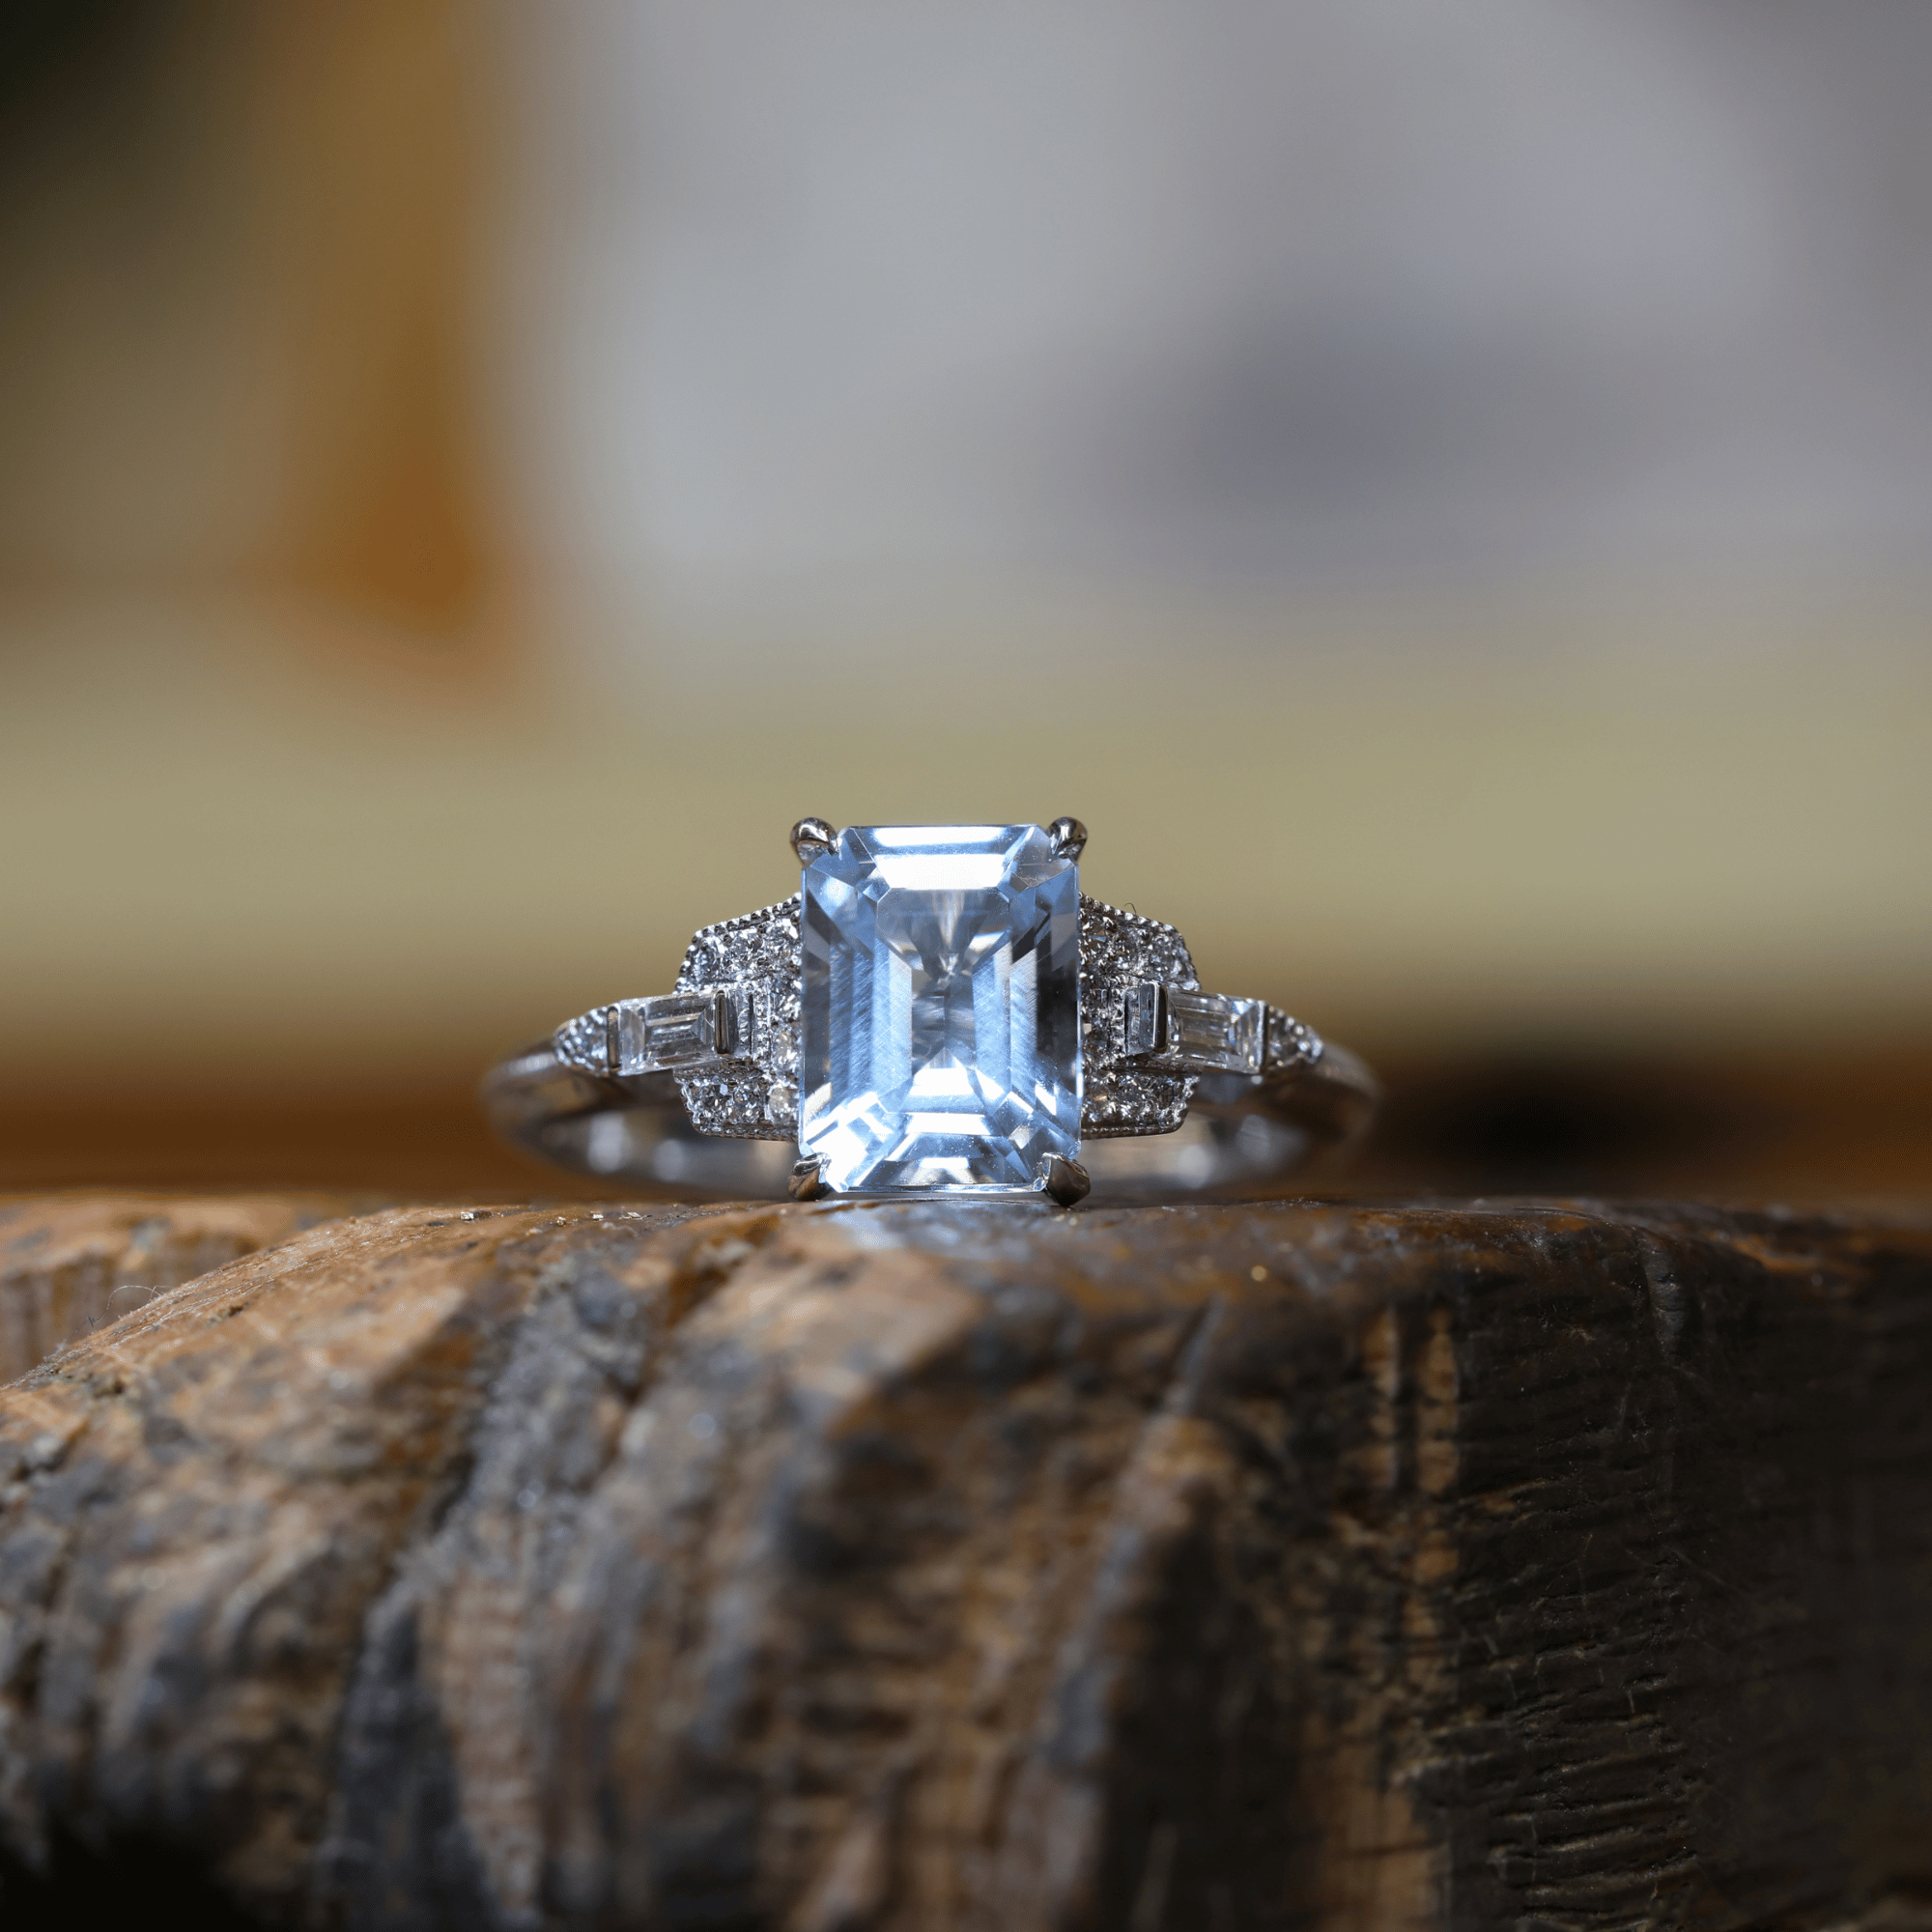 Emerald Cut Aquamarine & Mixed Cut Diamond Ring